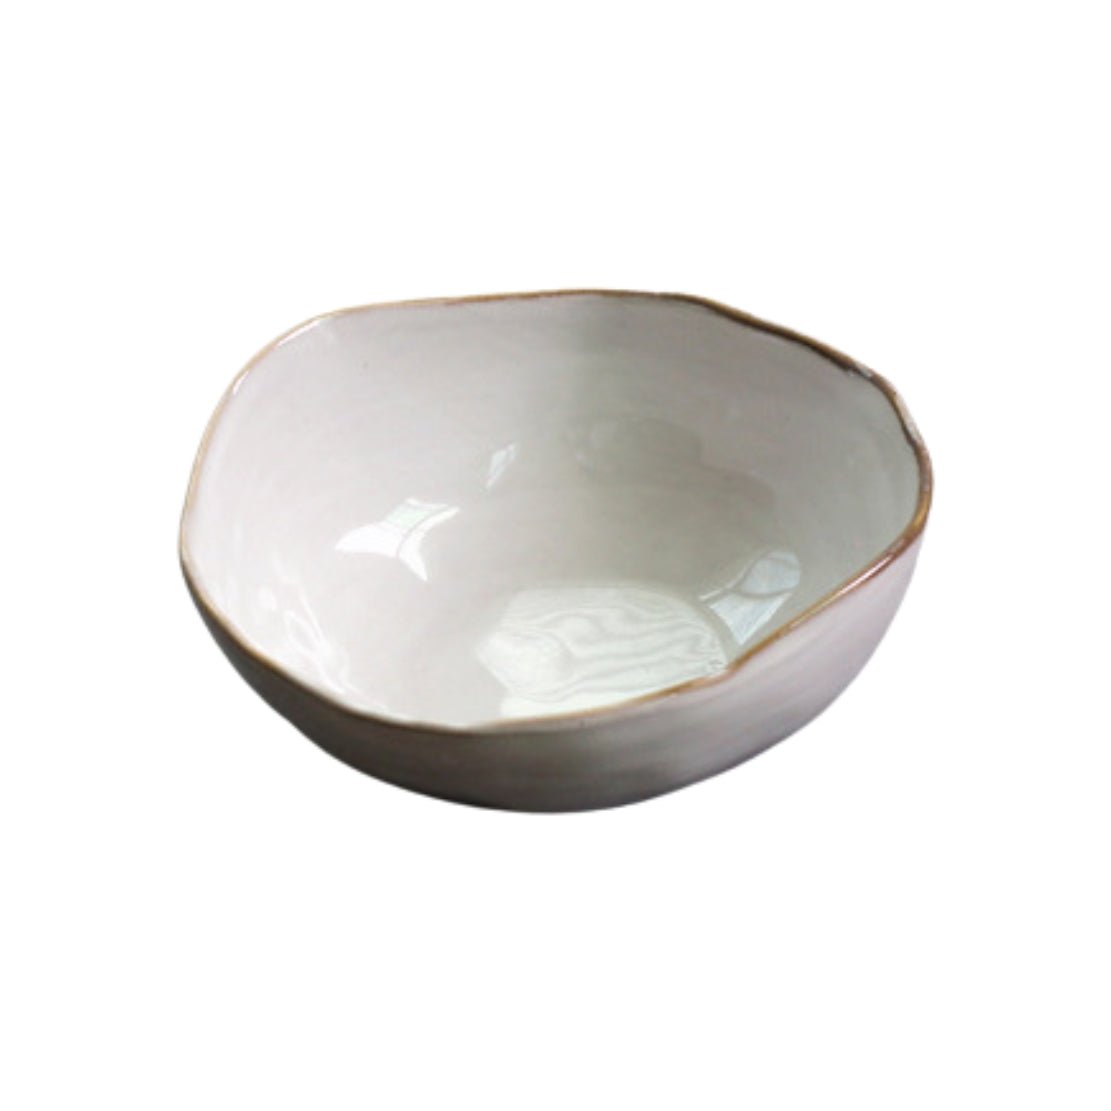 Asymmetrical white bowl